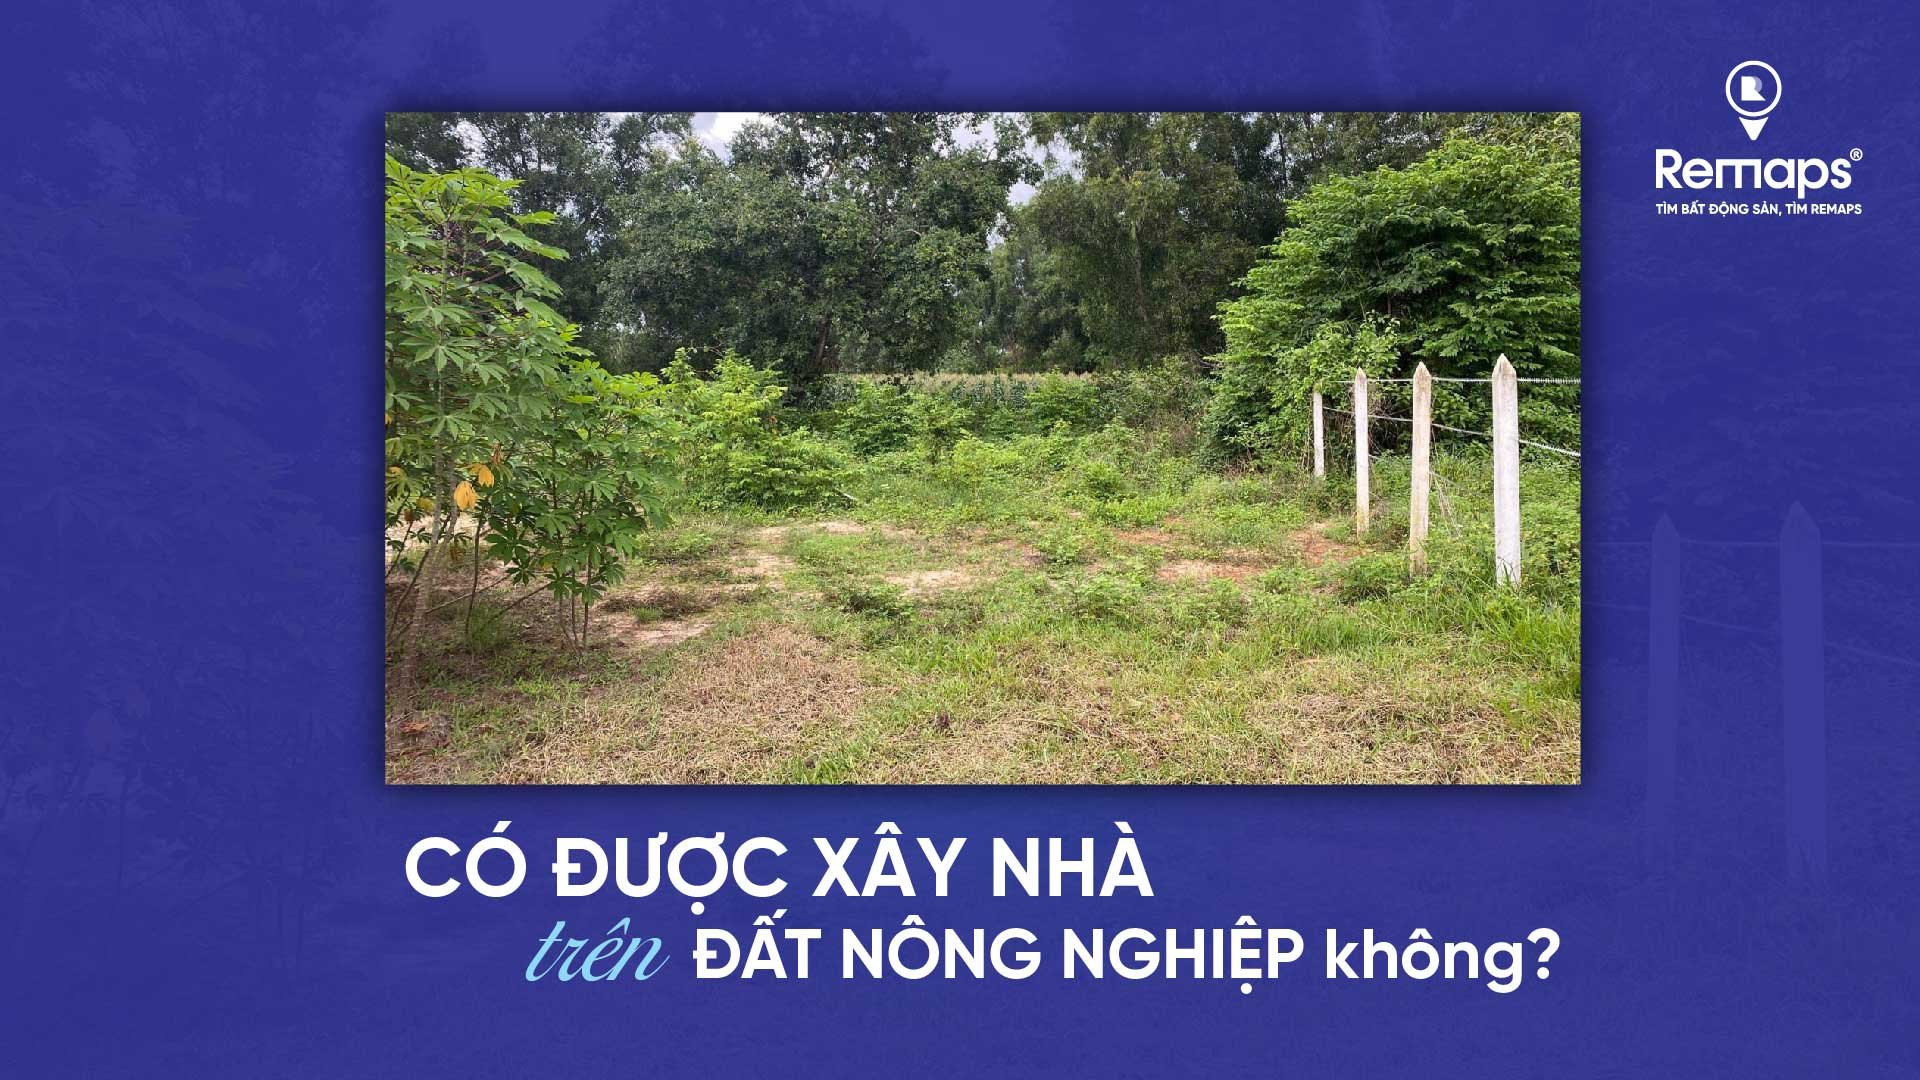 co-duoc-xay-nha-tren-dat-nong-nghiep-khong-news.remaps.vn